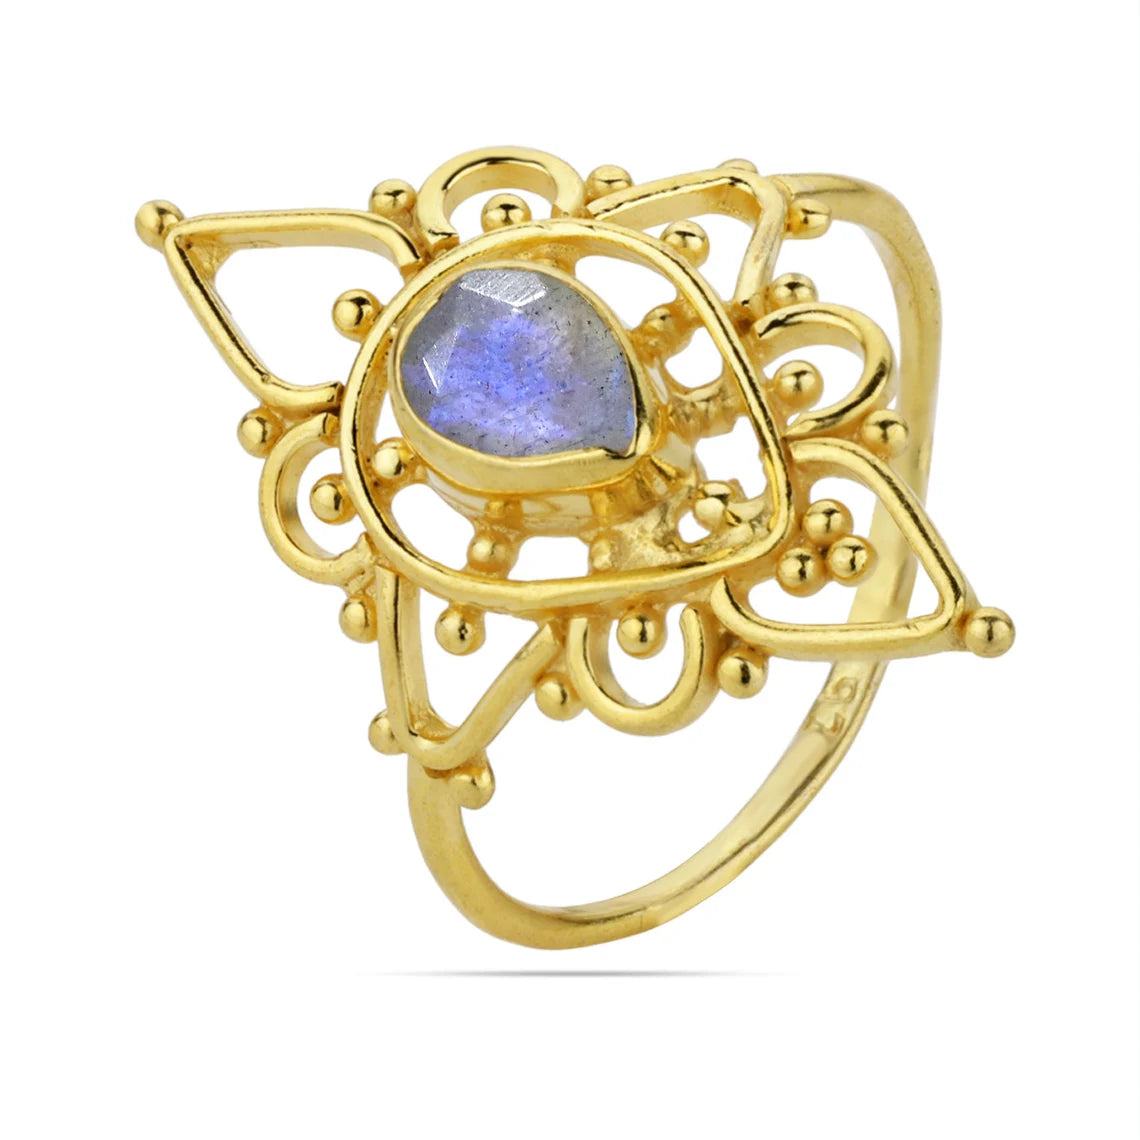 Labradorite Ring - Pear Ring - Designer Ring - Gemstone Ring - Stacking Ring - Gold Ring - Bridal jewelry 18k Gold Plated Ring